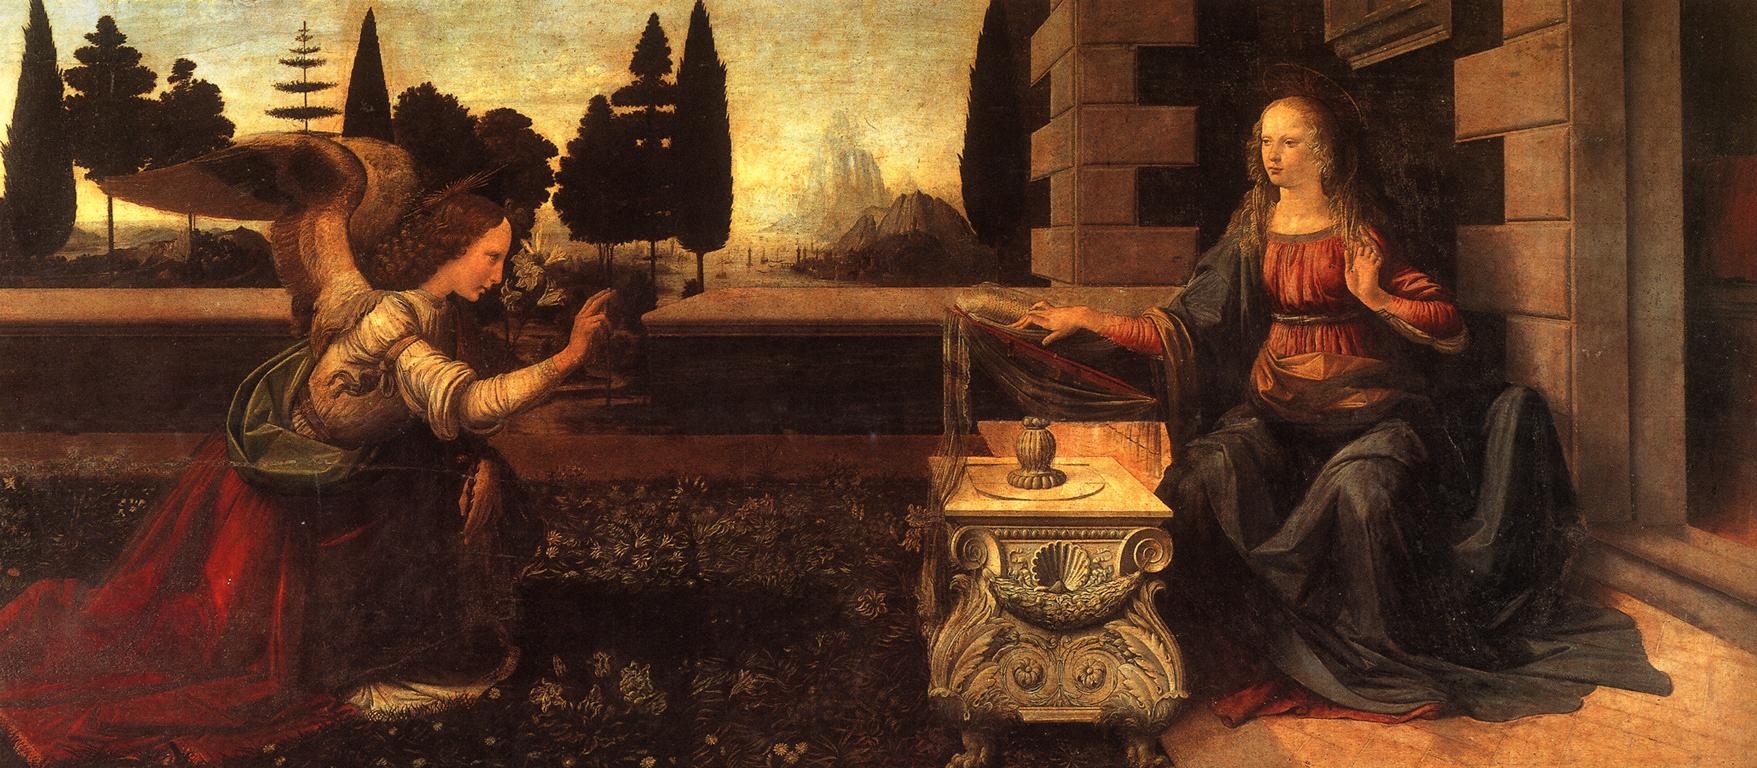 Annunciation by Leonardo da Vinci - c. 1472 - 217 x 98 cm Galleria degli Uffizi